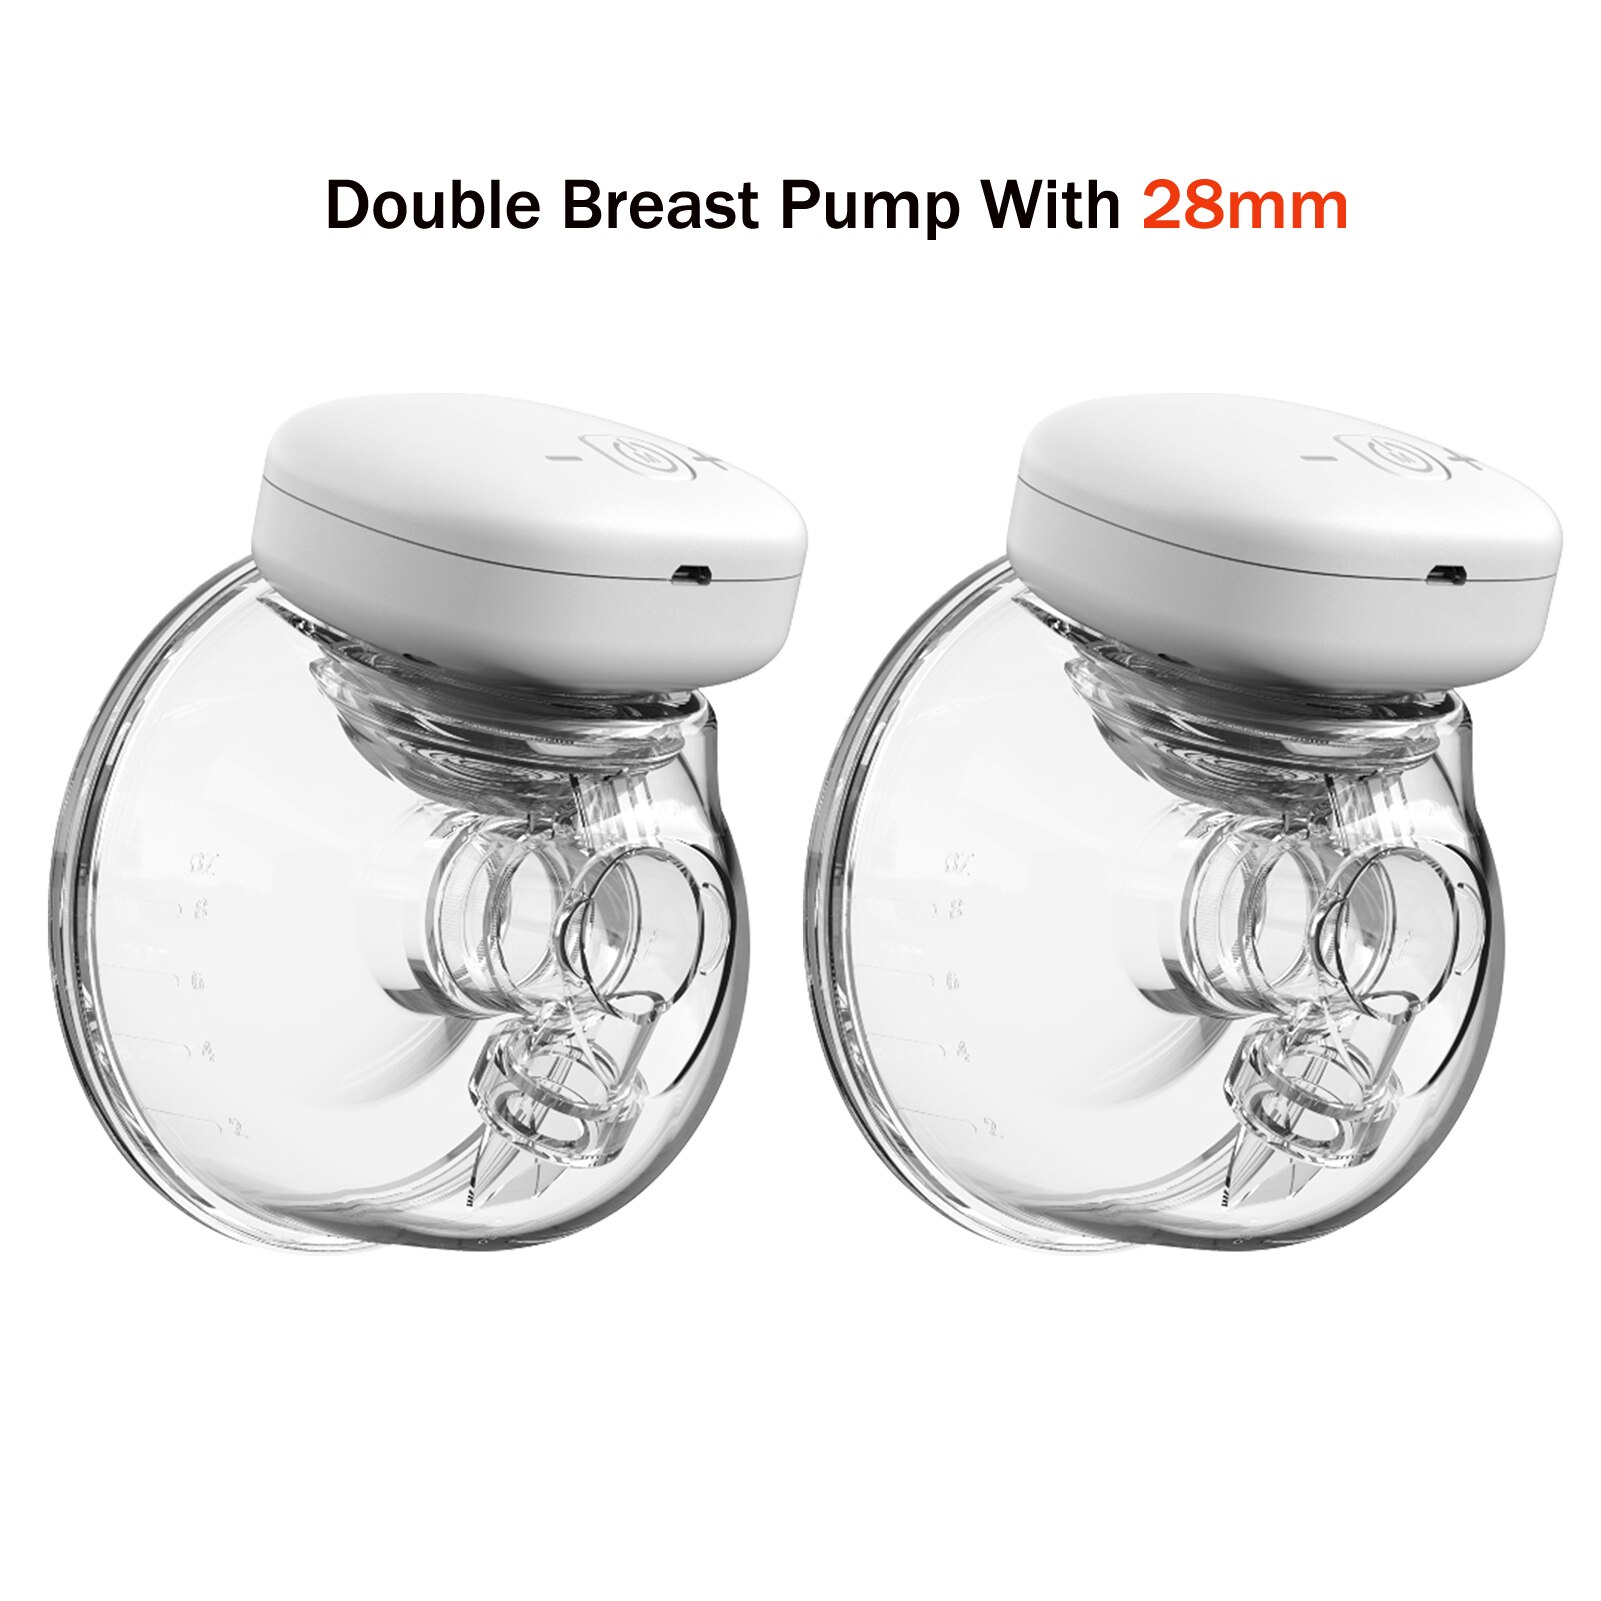 Tiralatte elettrico YOUHA ricaricabile silenzioso indossabile estrattore di latte portatile a mani libere lattiera automatica allattamento al seno